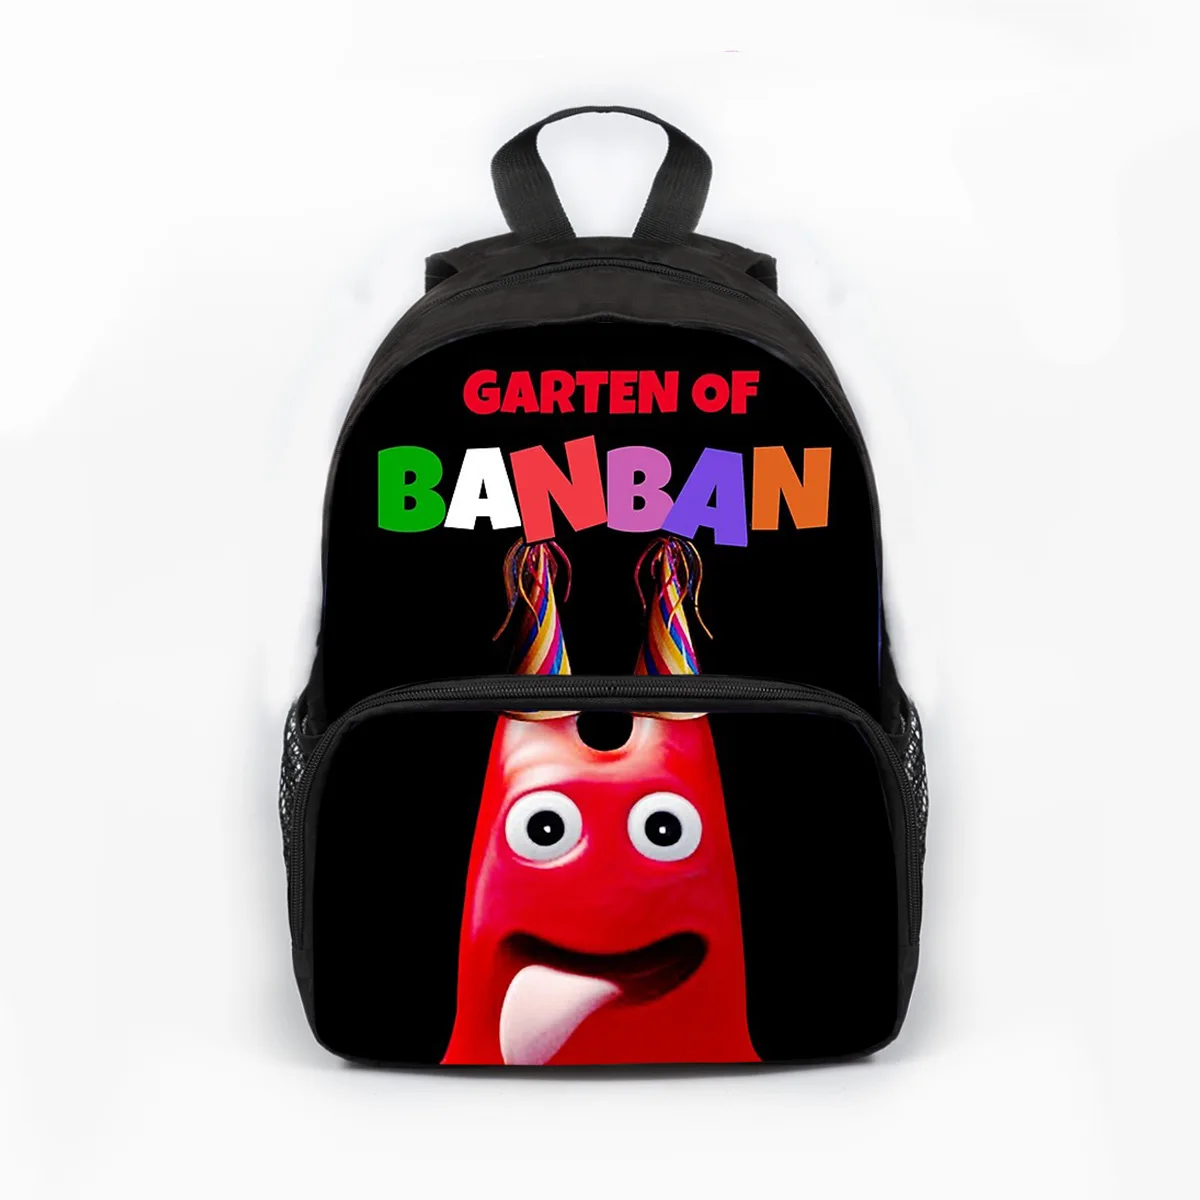 

Детский рюкзак Garten of Banban, для сада и детского сада, учеников, Сниженный школьный ранец для мальчиков и девочек